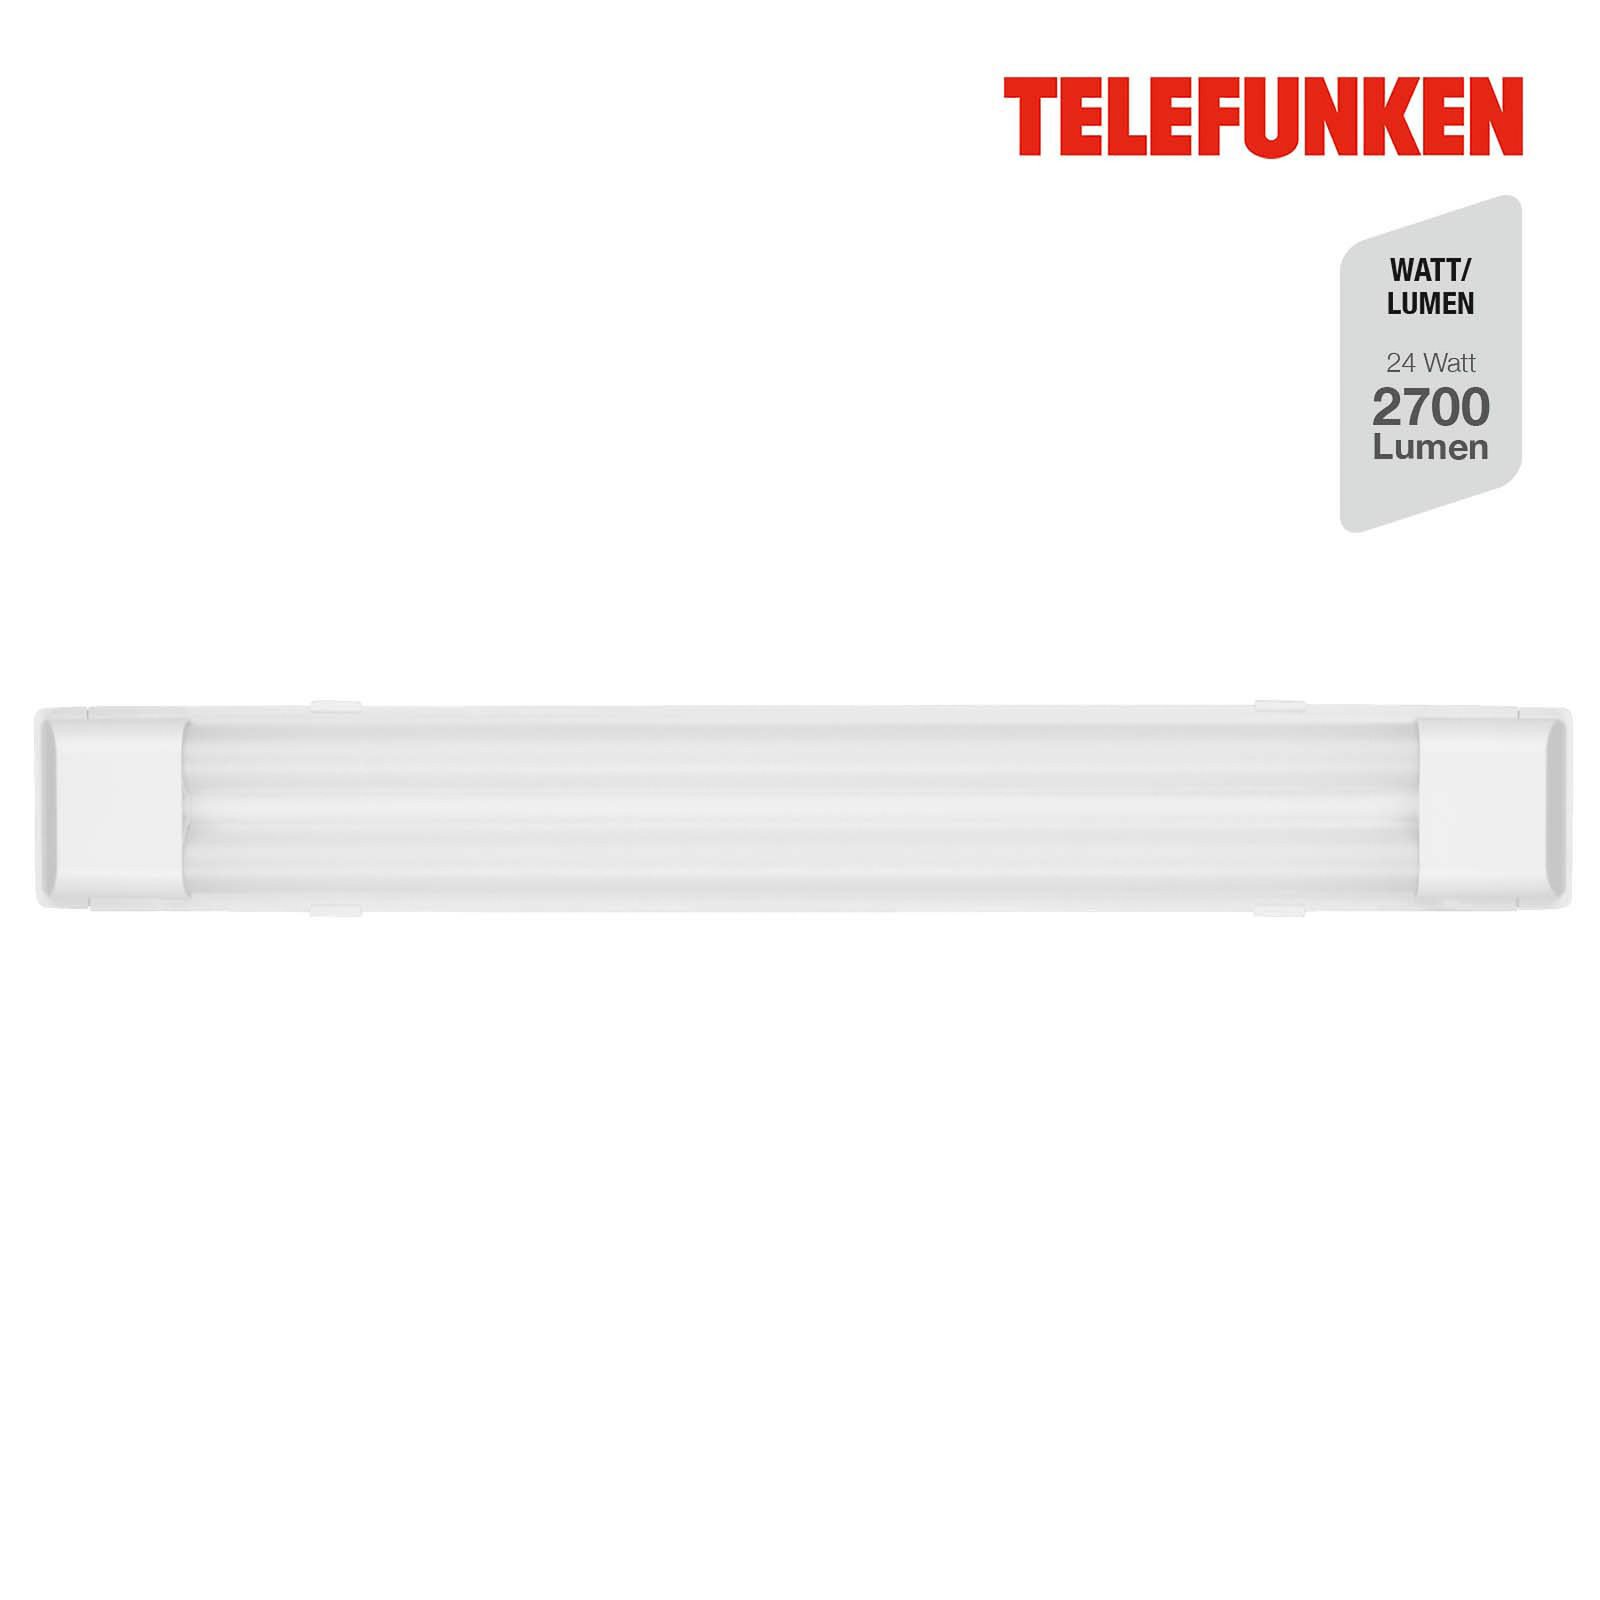 Maat LED ceiling light, 60 cm long, white, 840